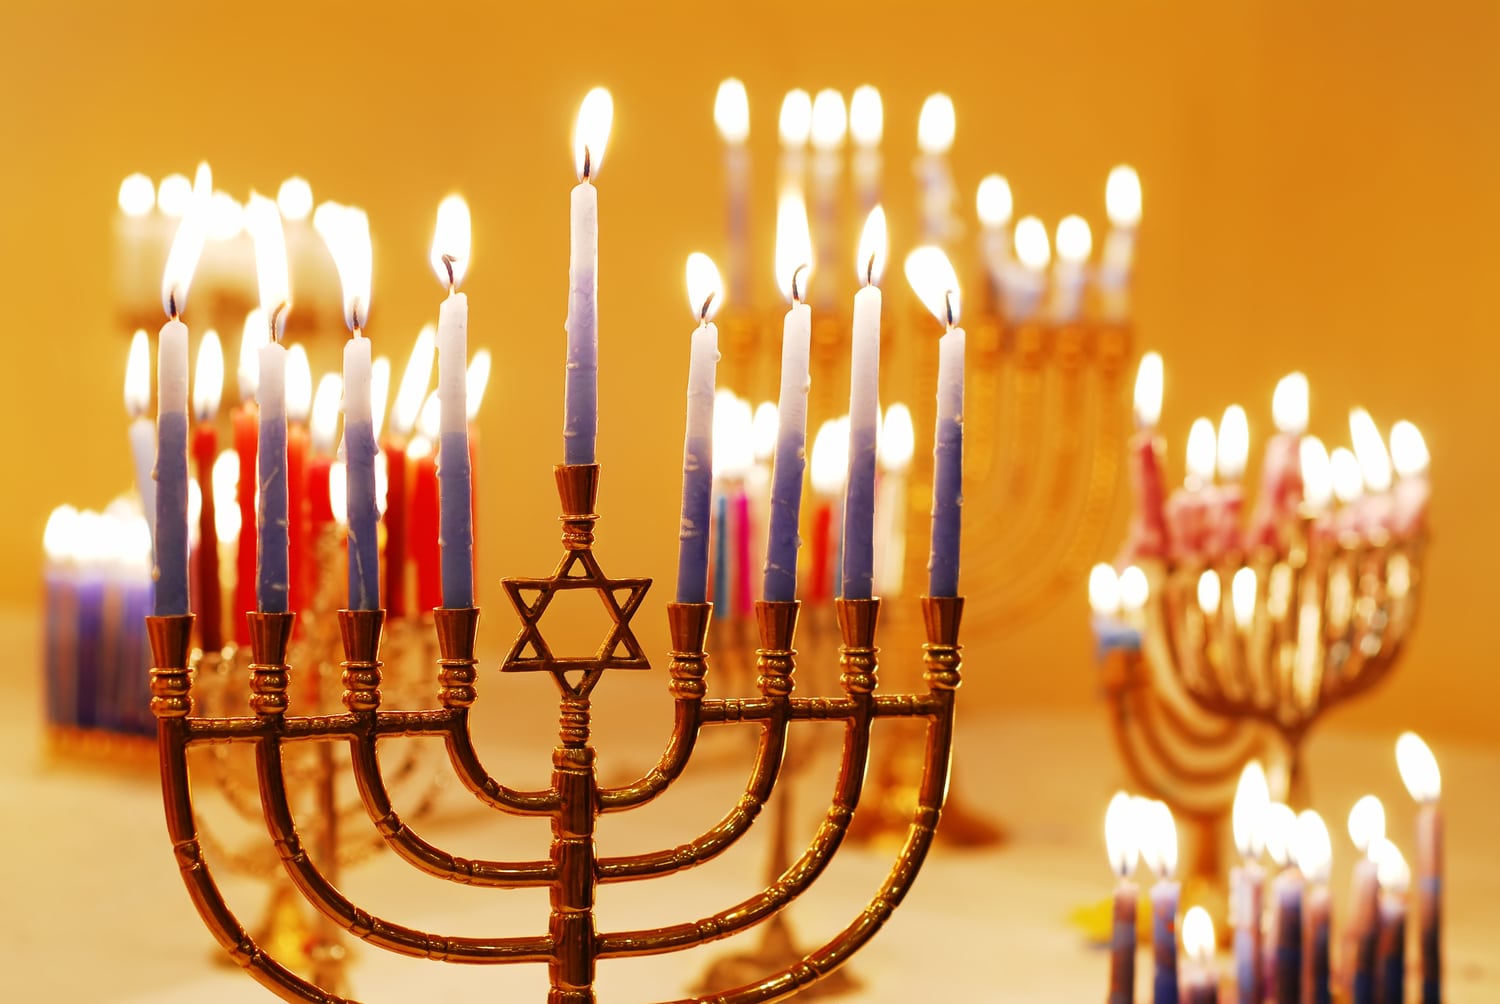 El 12 de diciembre comienza Hanukkah, la fiesta de las luces